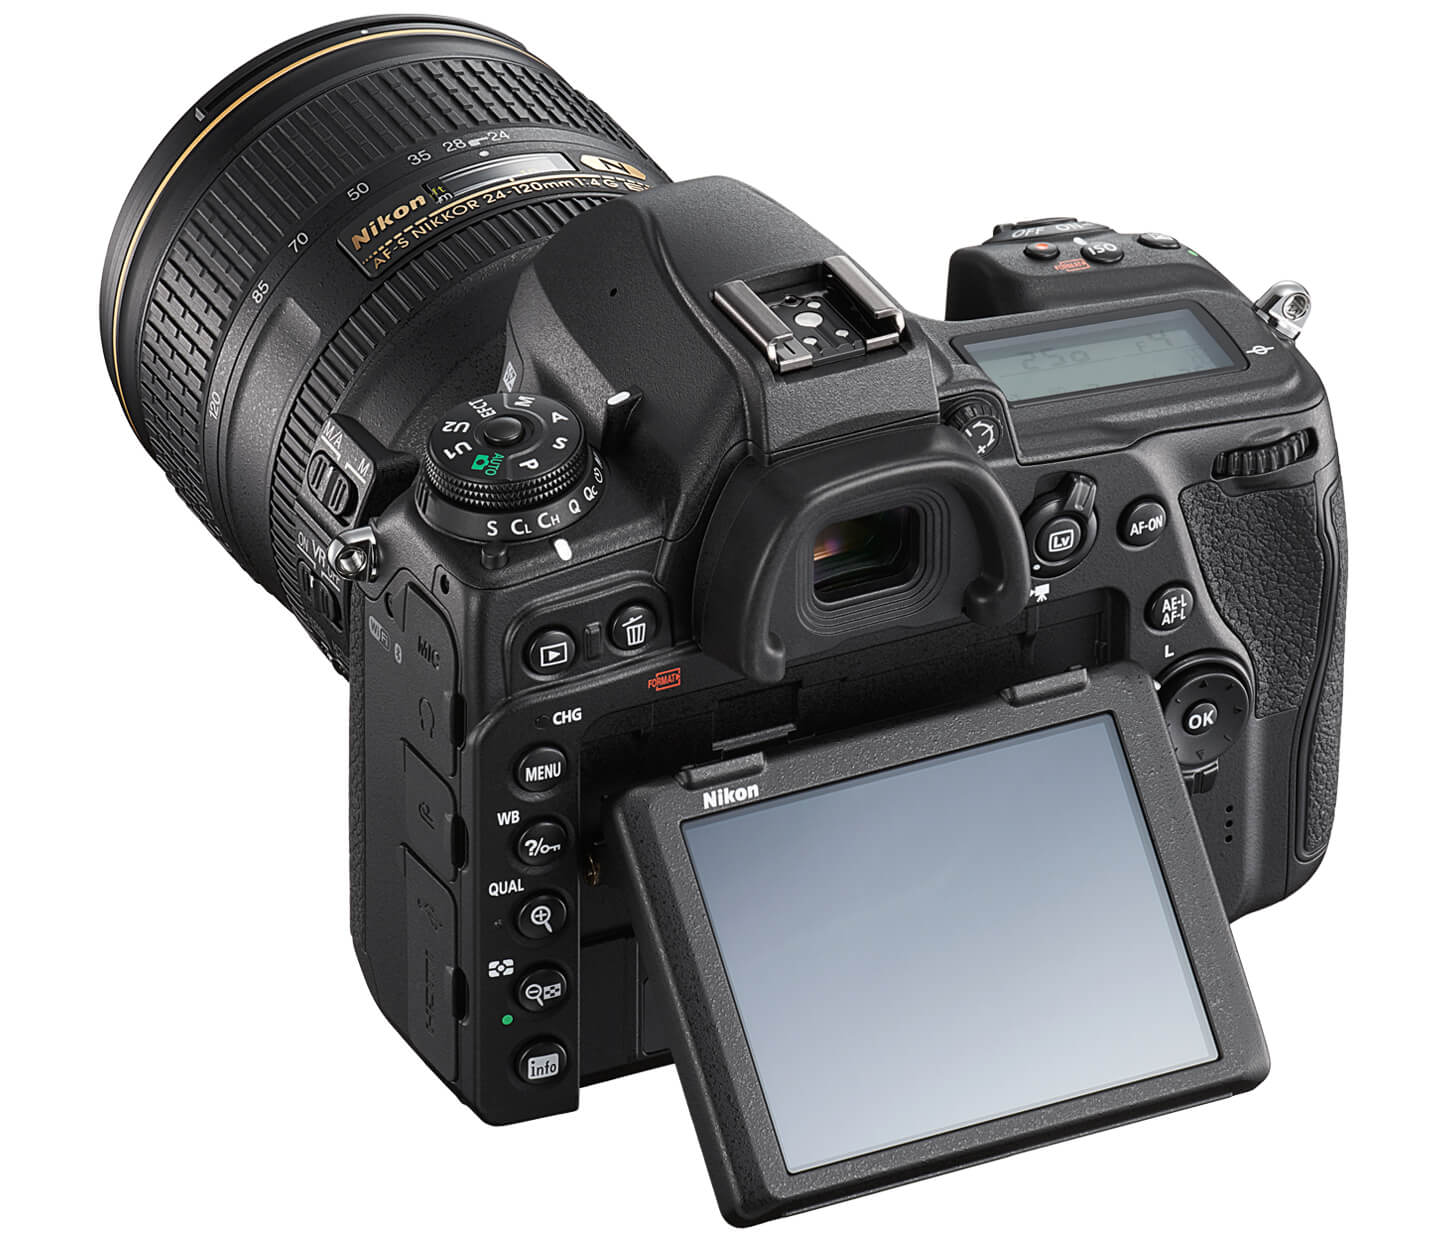 Nikon DSLR camera